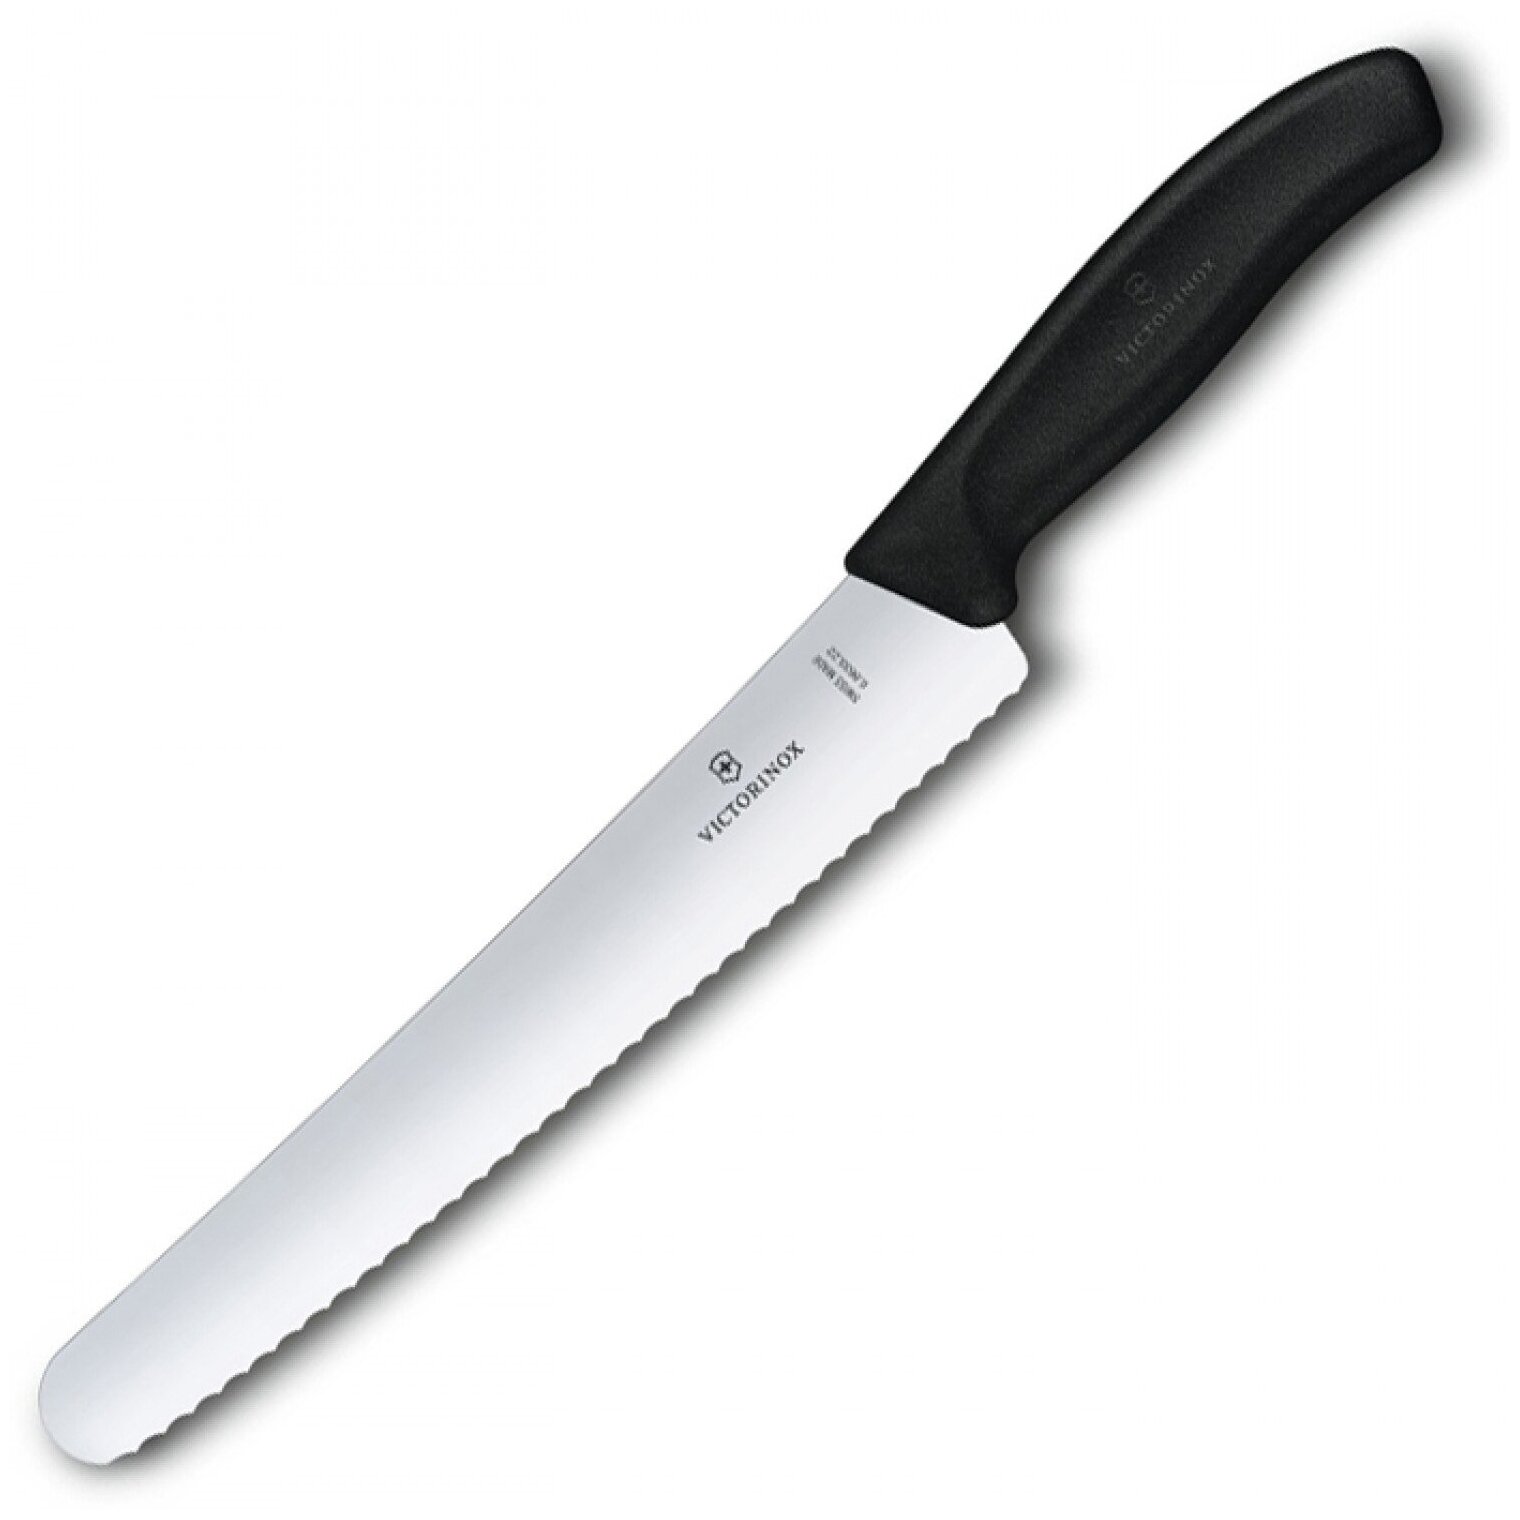 Нож для хлеба и выпечки VICTORINOX SWISSCLASSIC 6.8633.22B